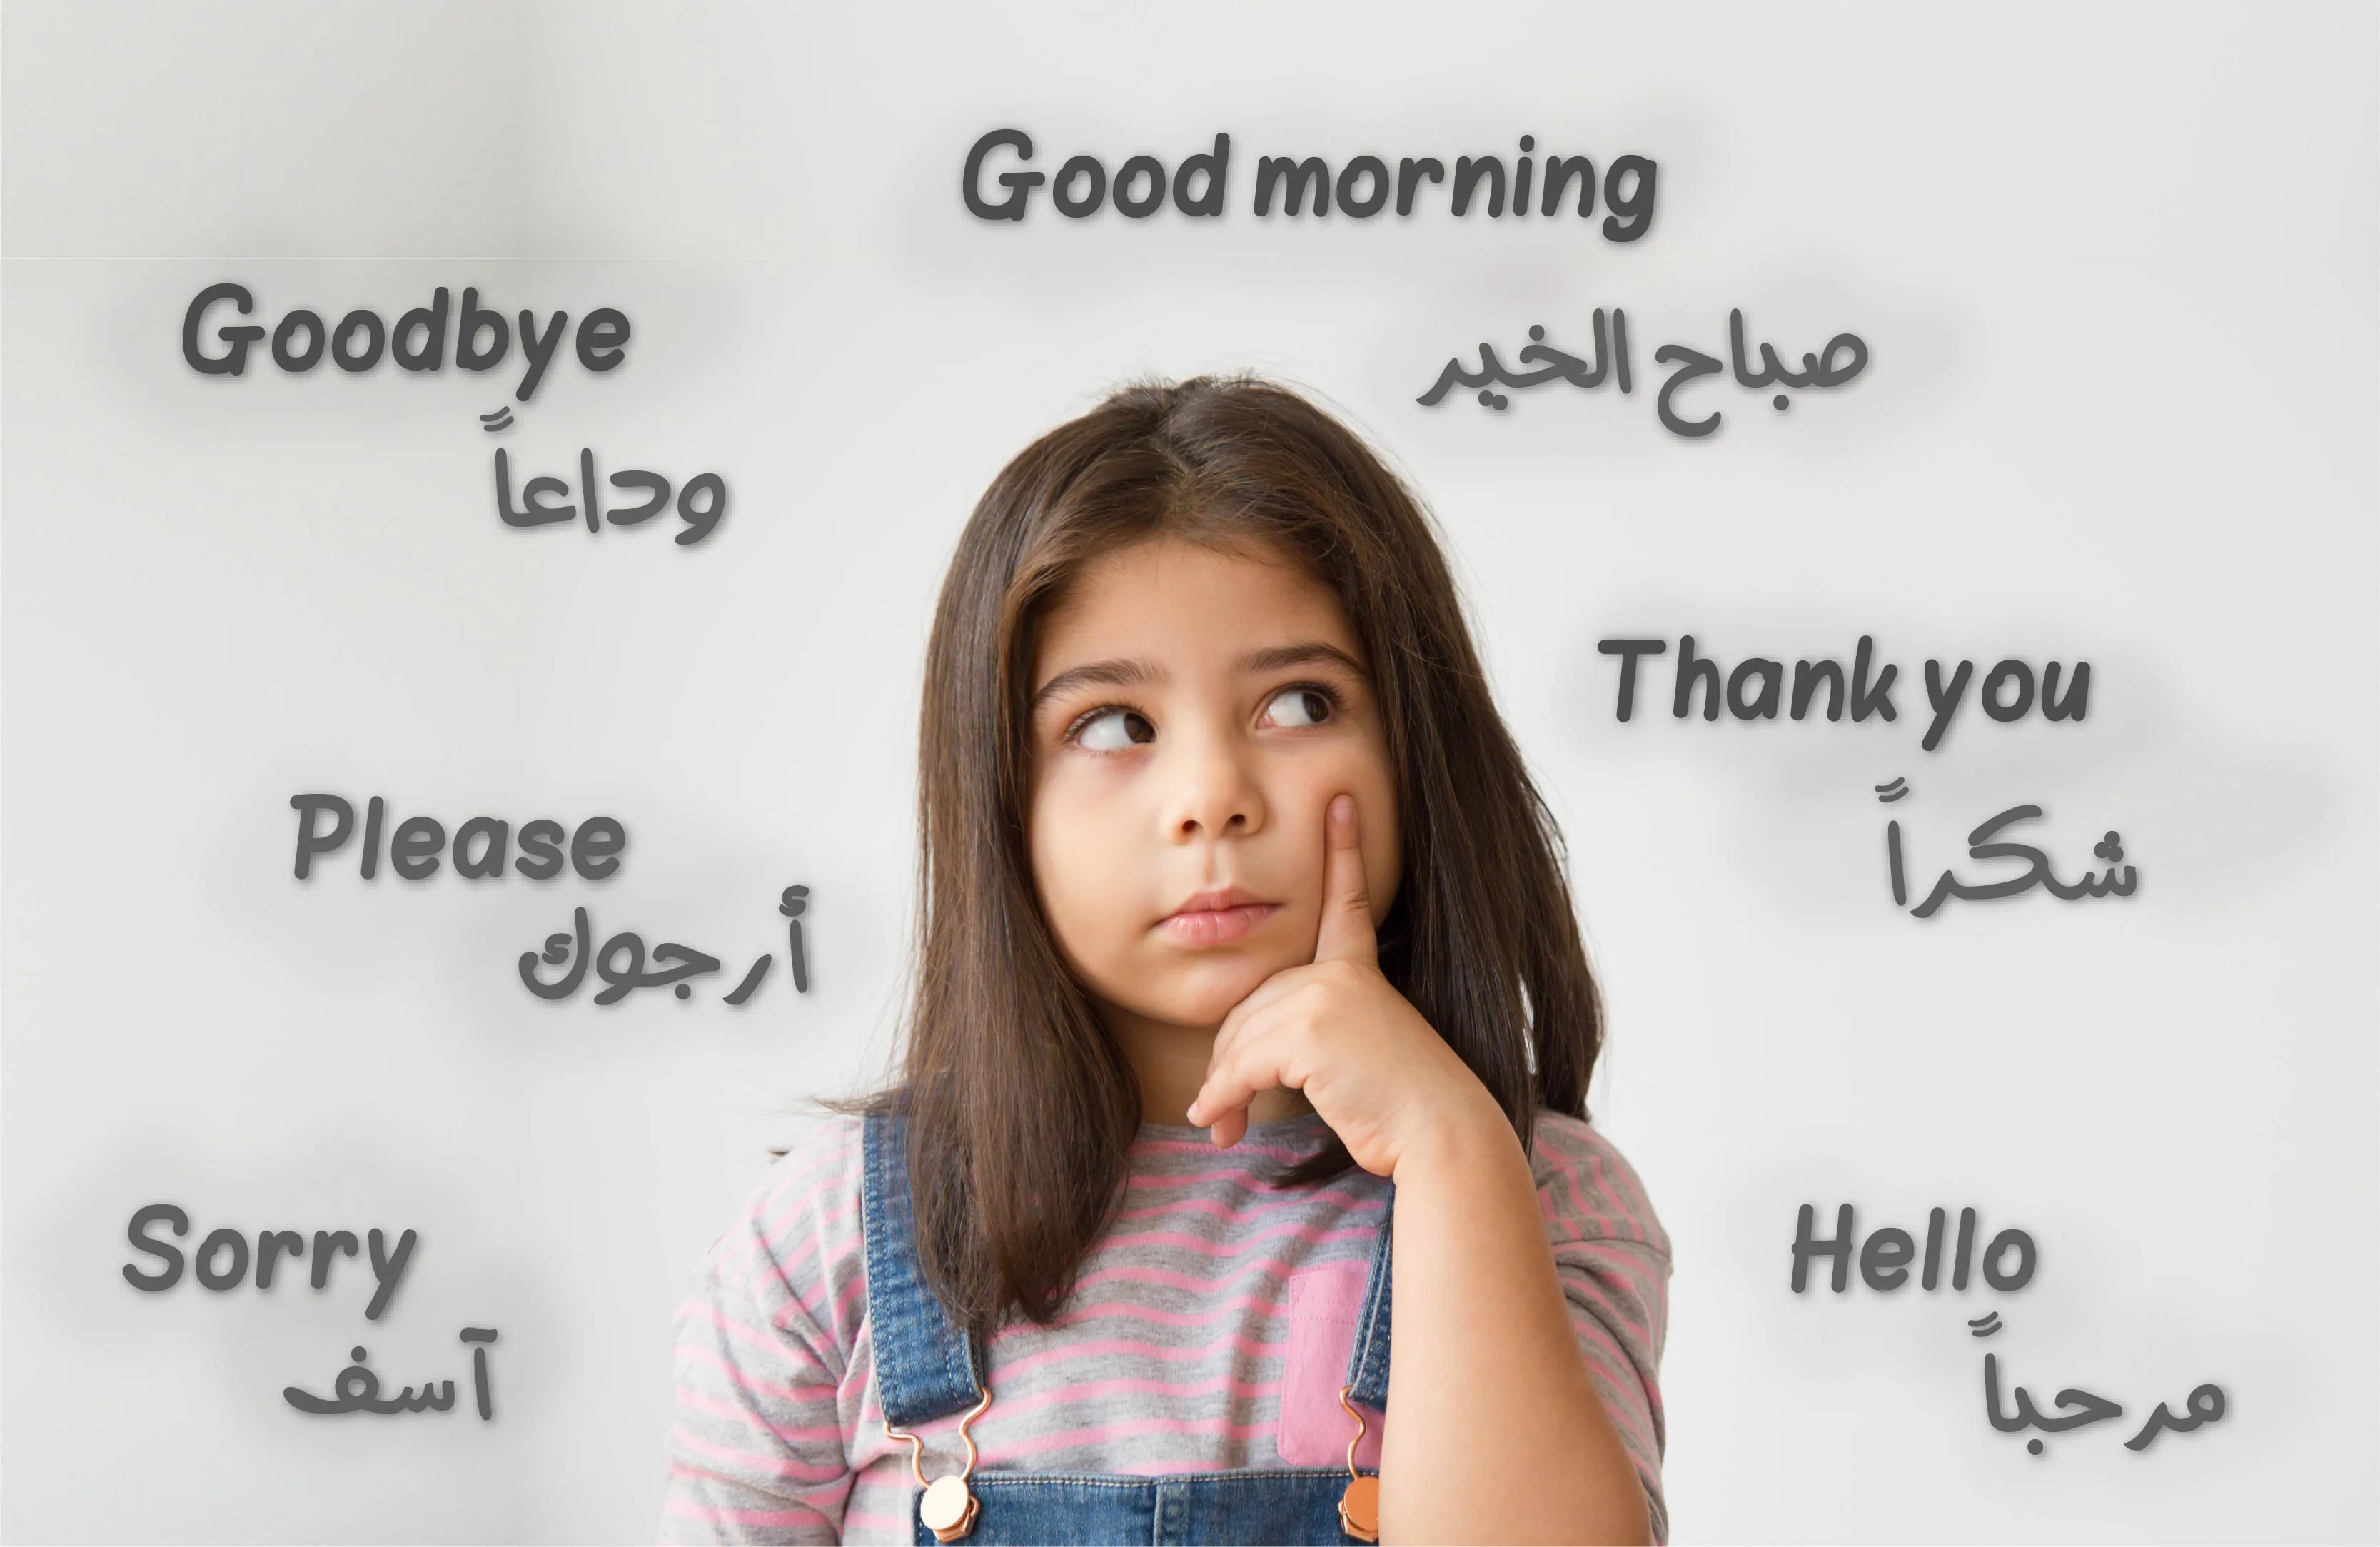 ثنائية اللغة، تعلم اللغة، اللغة العربية، اللغة الإنجليزية، التربية، دور الأهل، التحدث مع الطفل